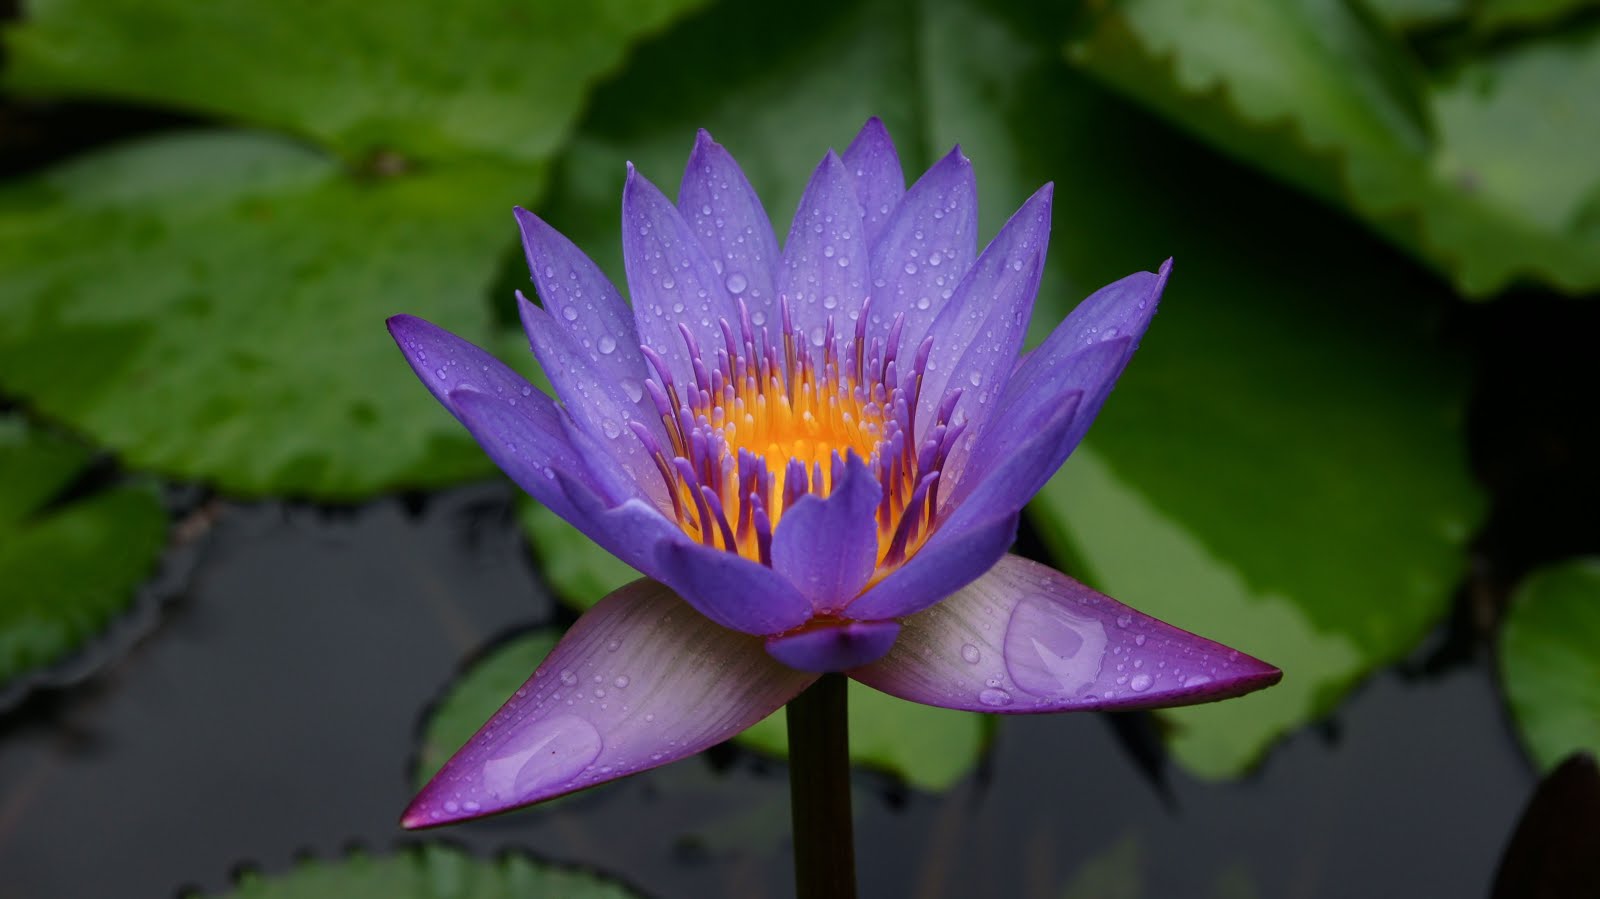 Banco de Imágenes Gratis: Flor de loto color púrpura después de la